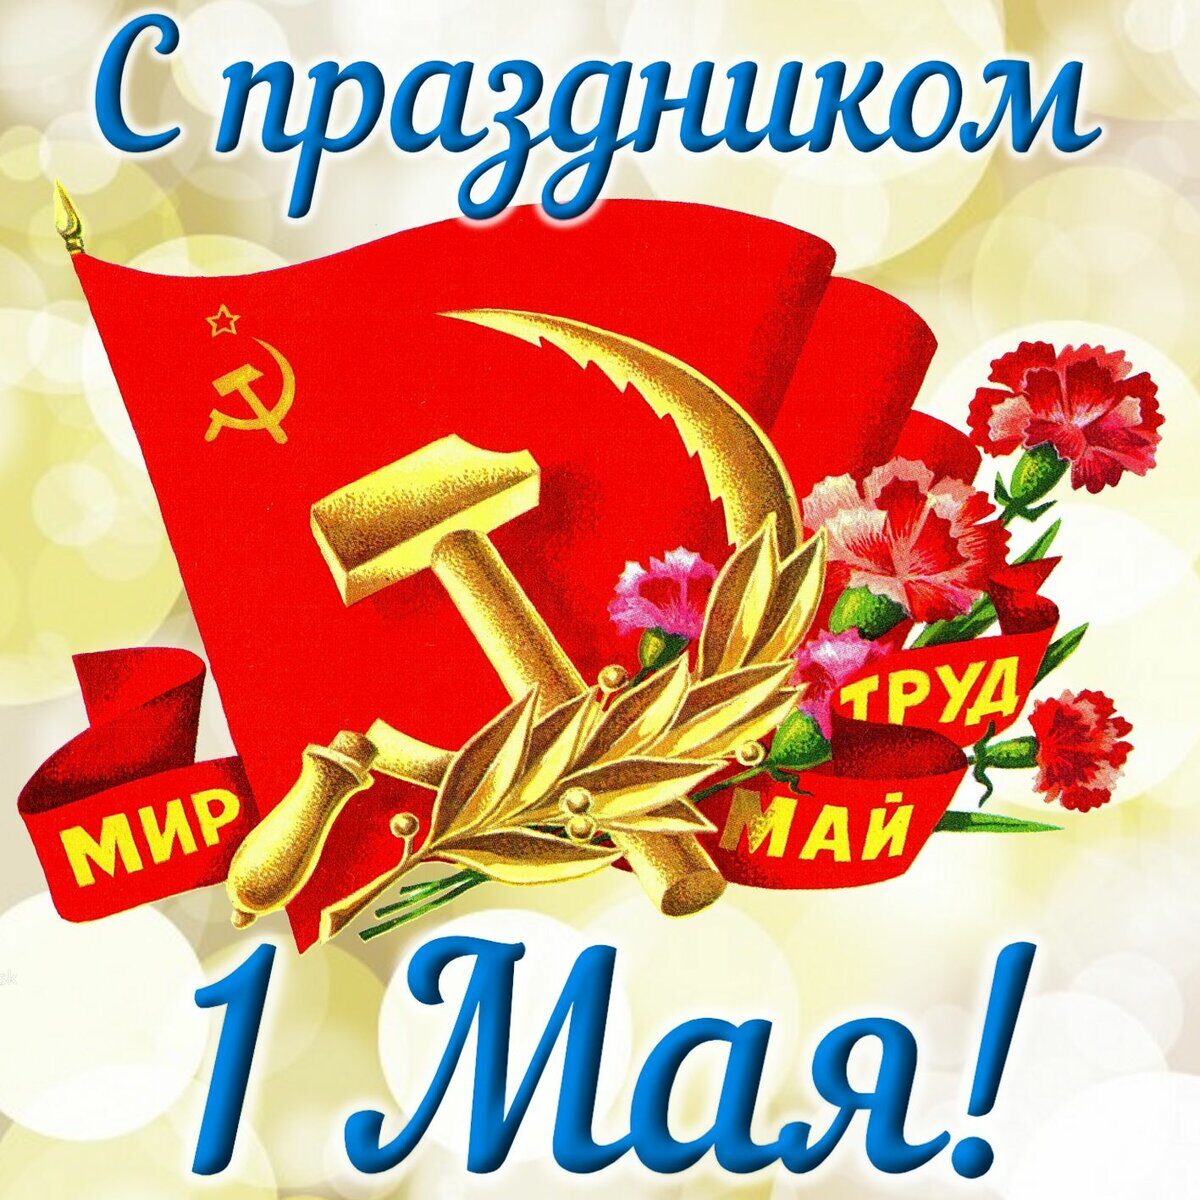 Фото Праздничная открытка с красным знаменем, серпом и молотом, цветами и надписью мир, труд, май, (с праздником 1 Мая)